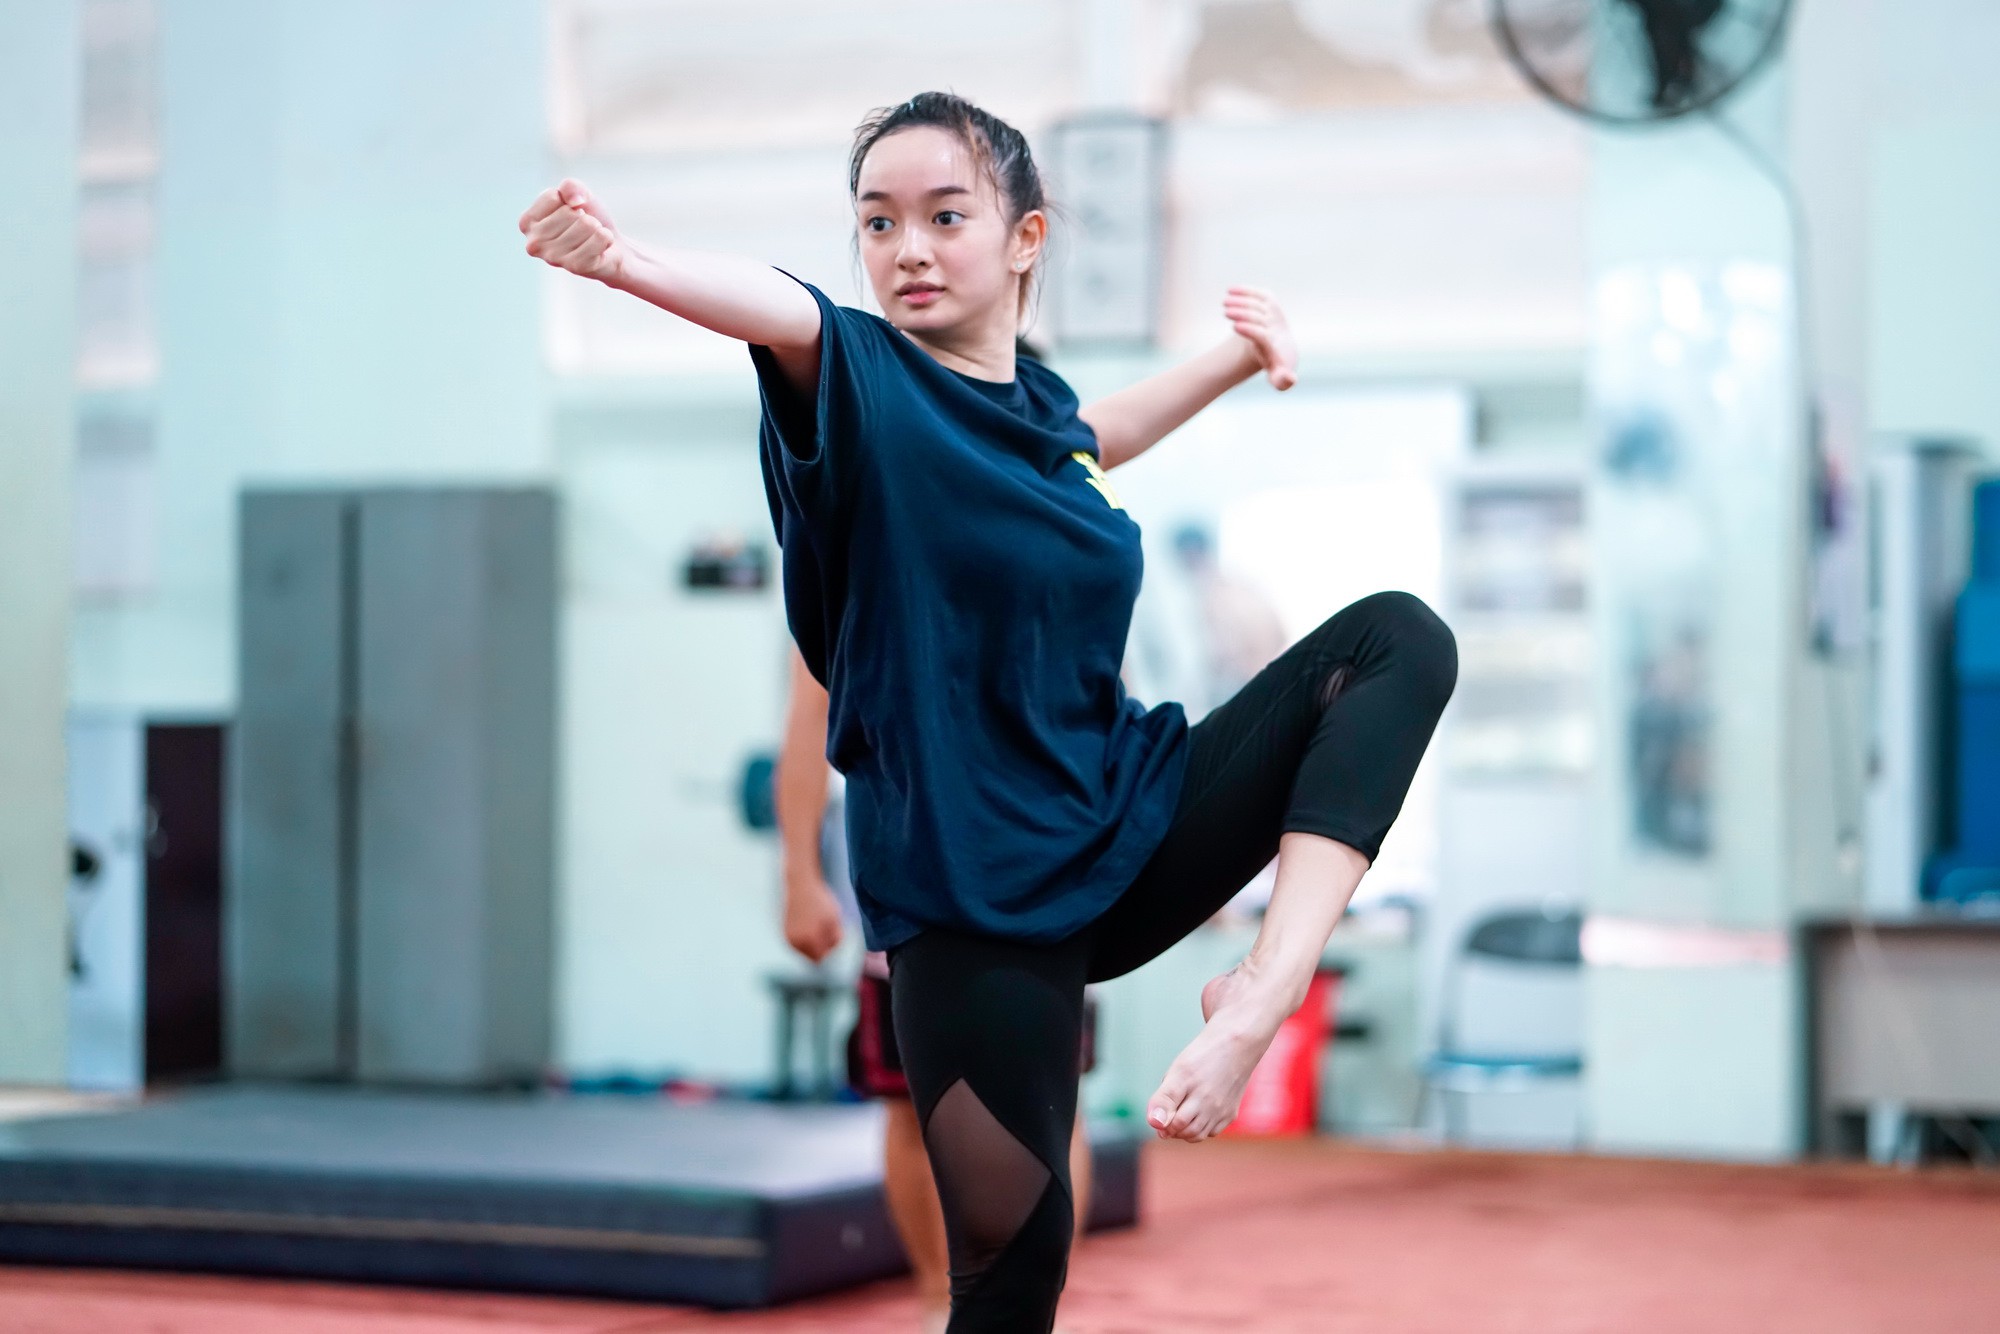 Kaity Nguyễn cật lực tập ballet cho phim mới nhưng fan chỉ thấy... tức cười! - Ảnh 7.